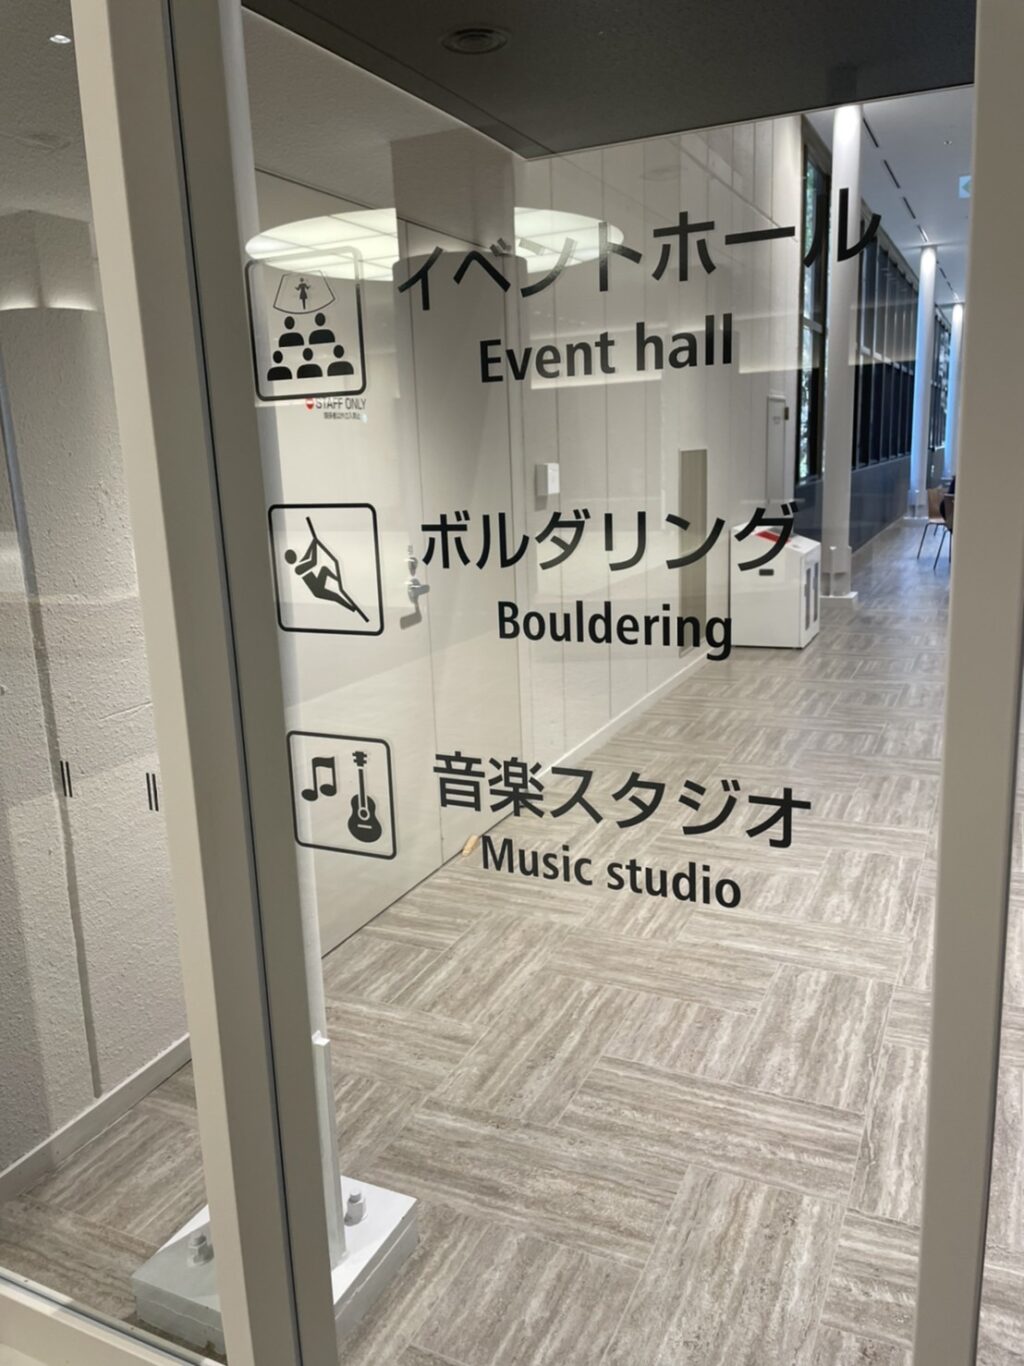 イベントホールでは「ダンスや和太鼓・ボクササイズ教室もあり」